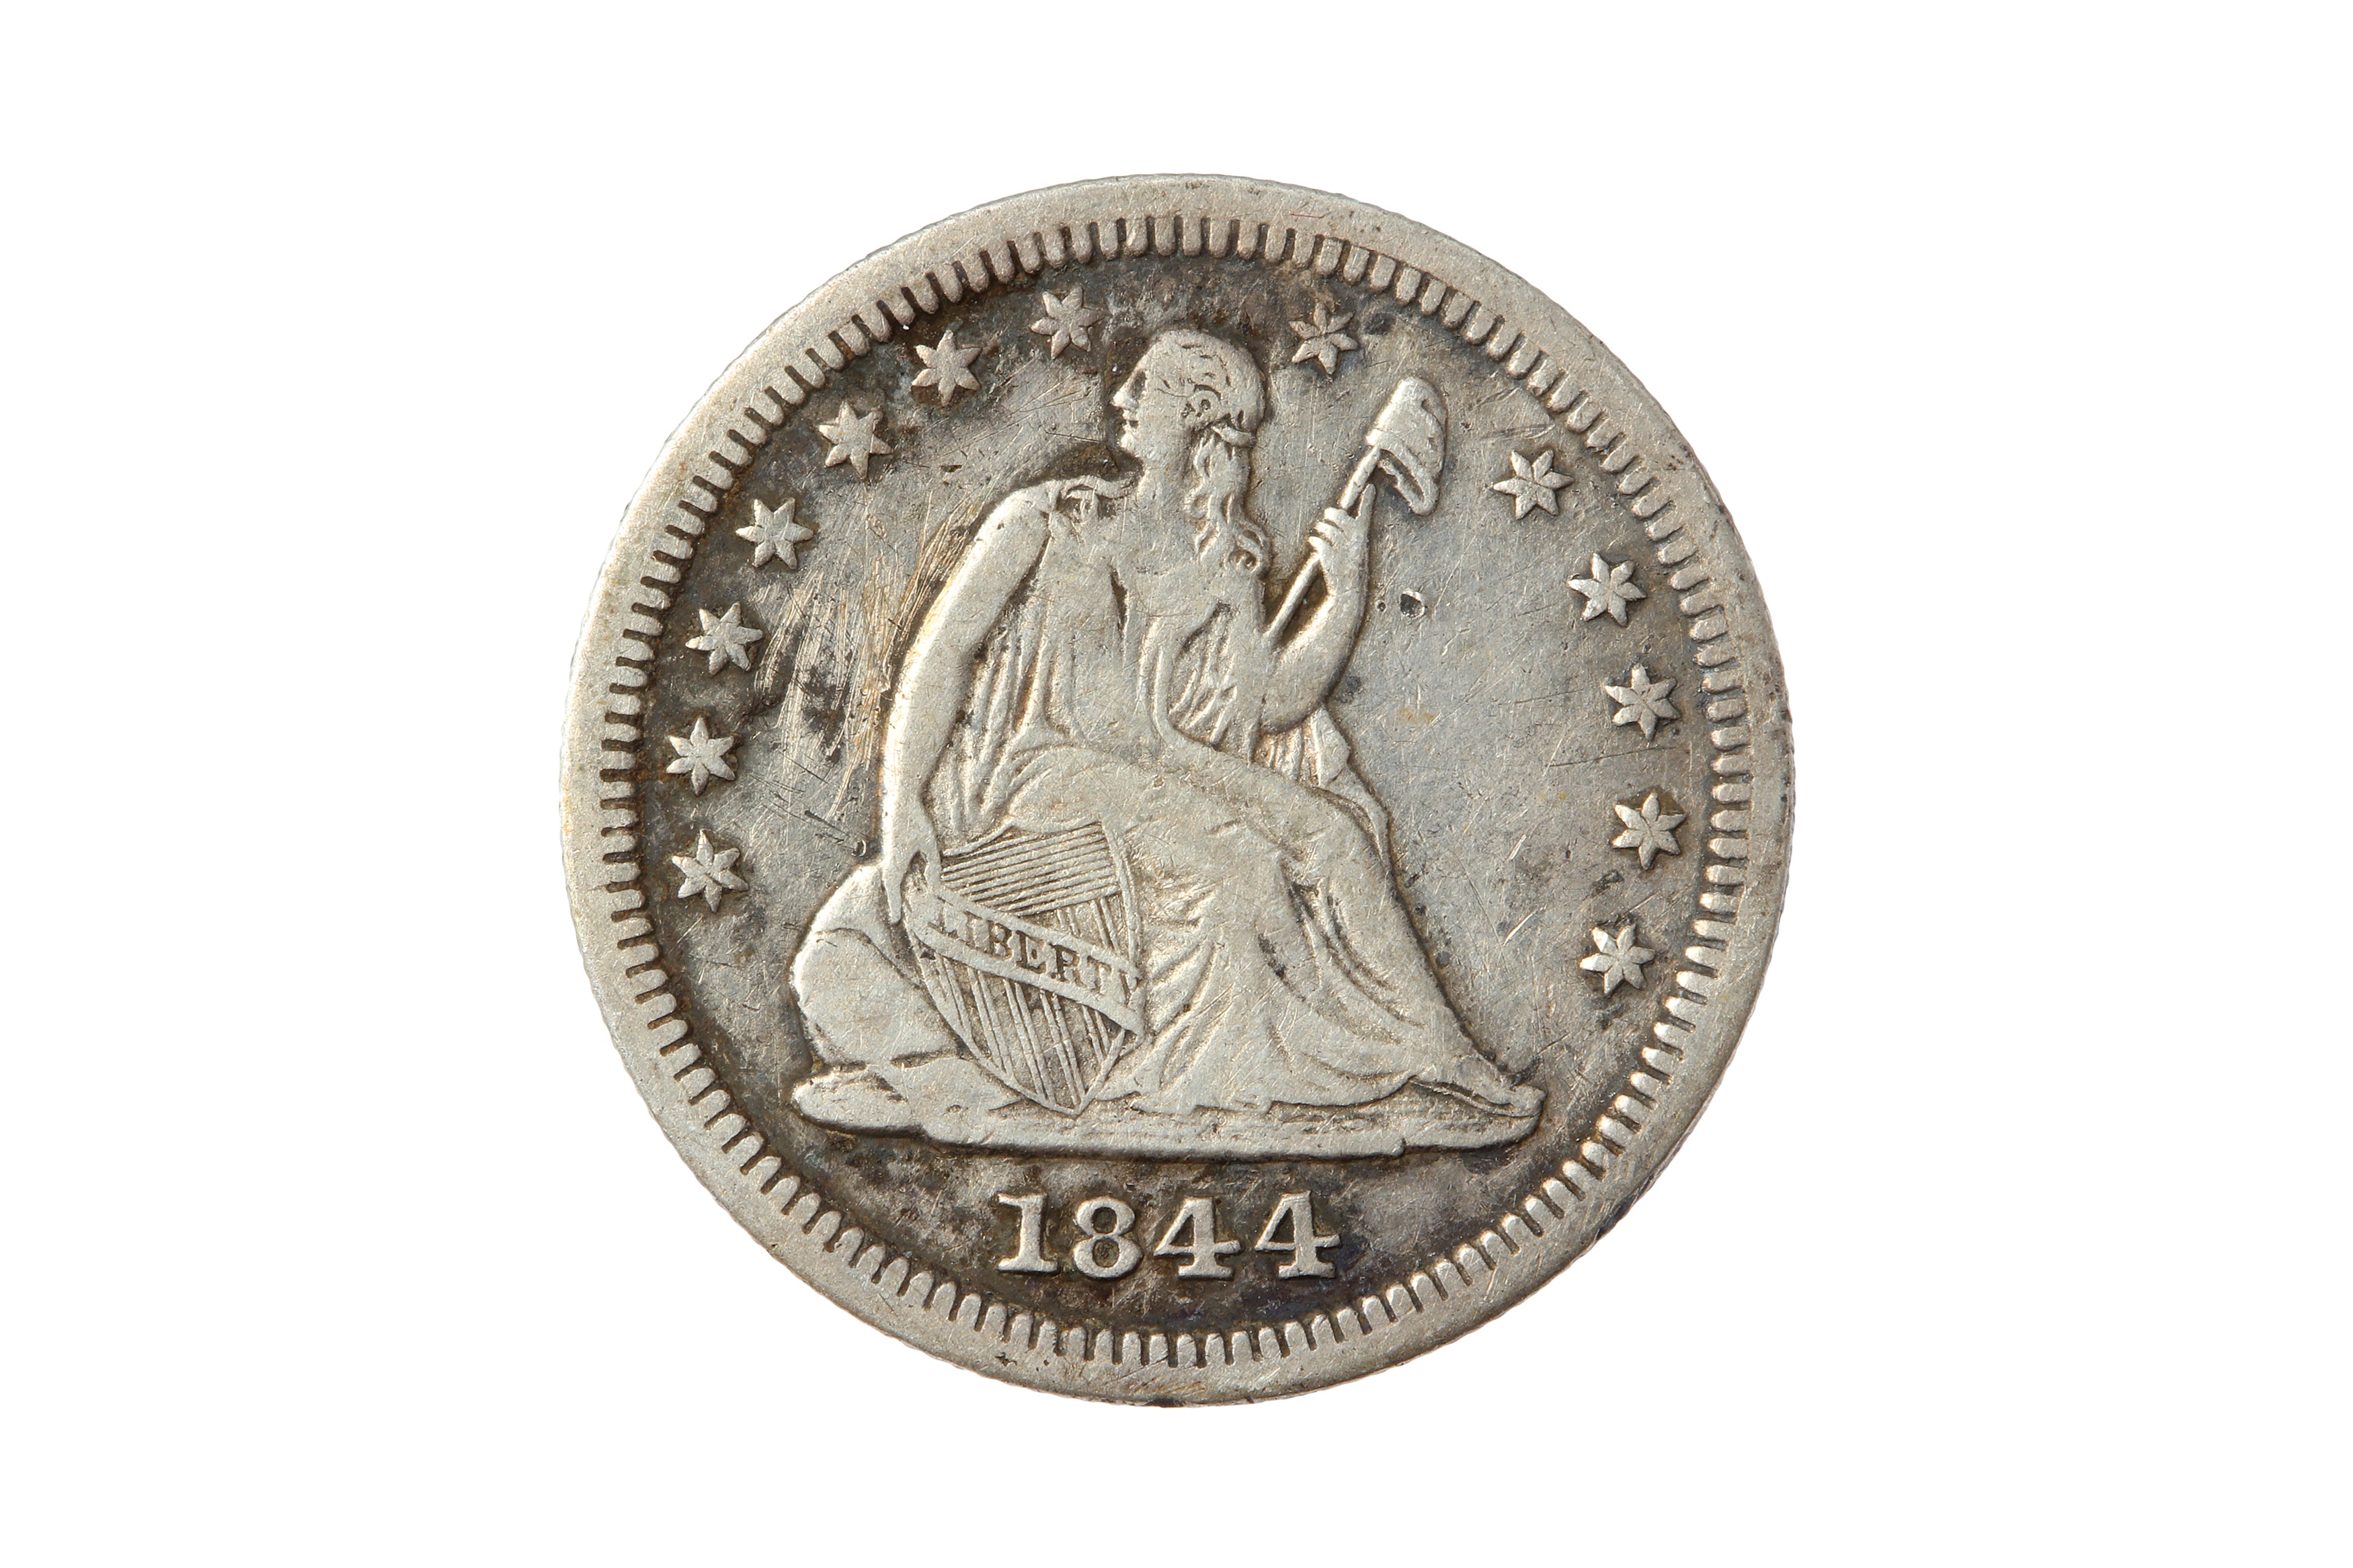 USA, 1844-O 25 CENTS/QUARTER DOLLAR.